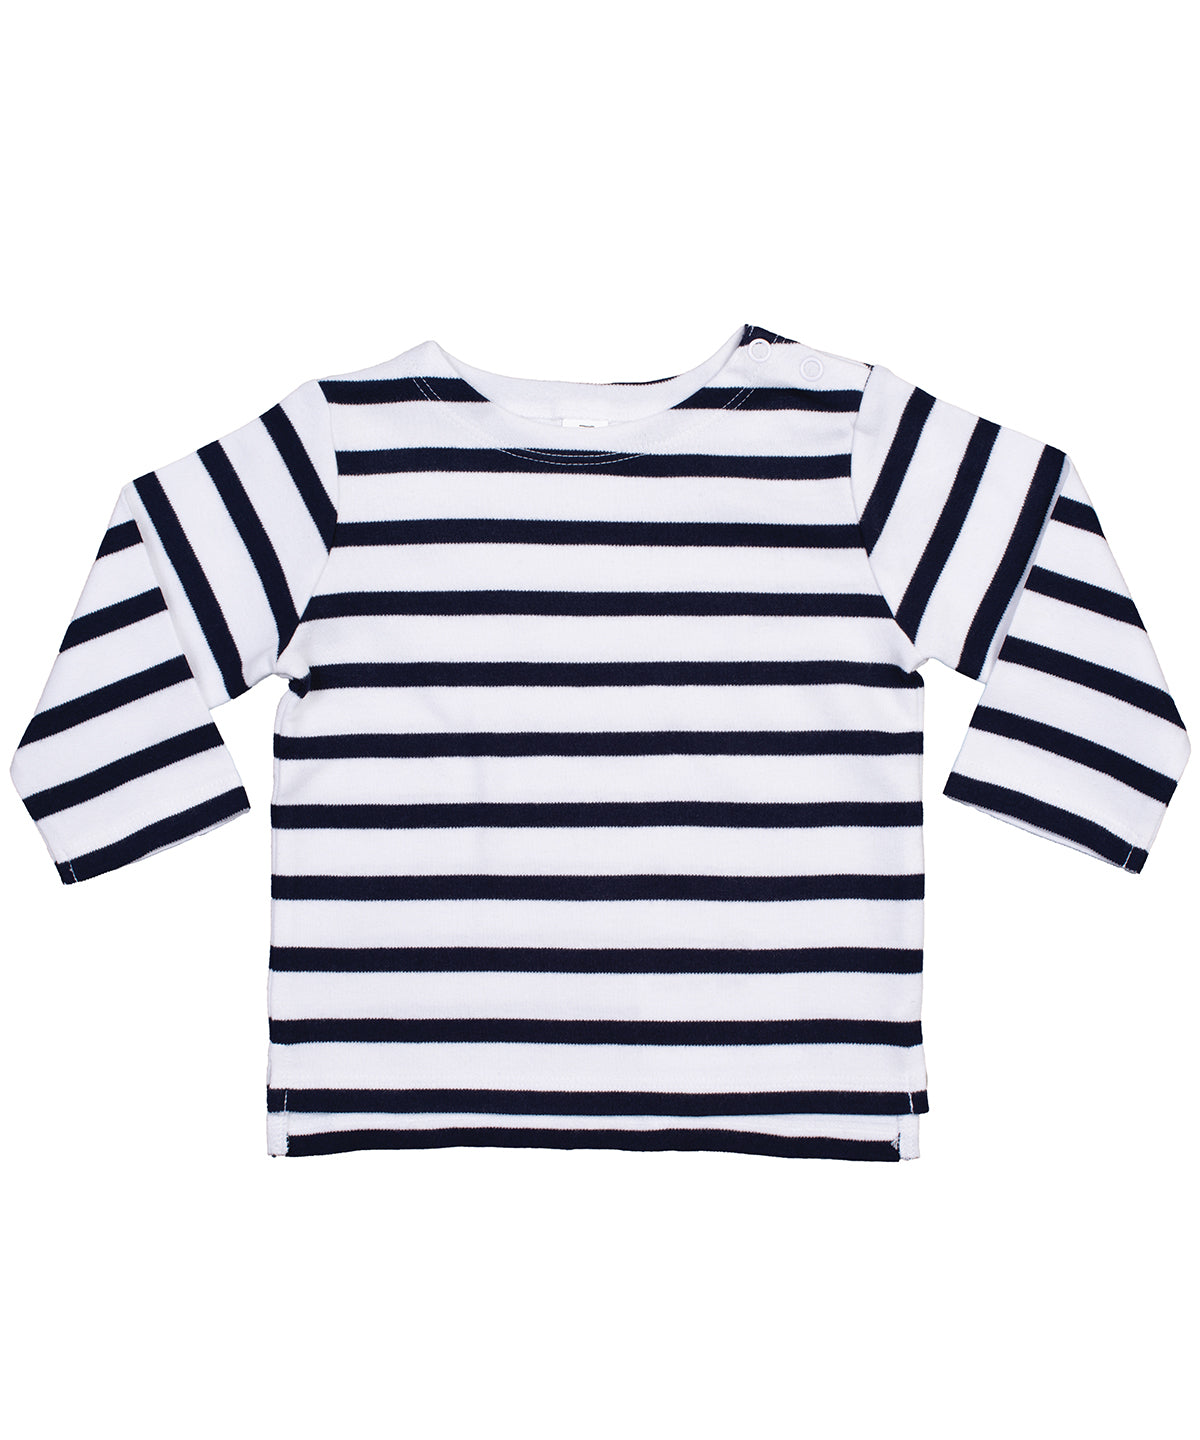 Personalised T-Shirts - Stripes Babybugz Baby Breton top